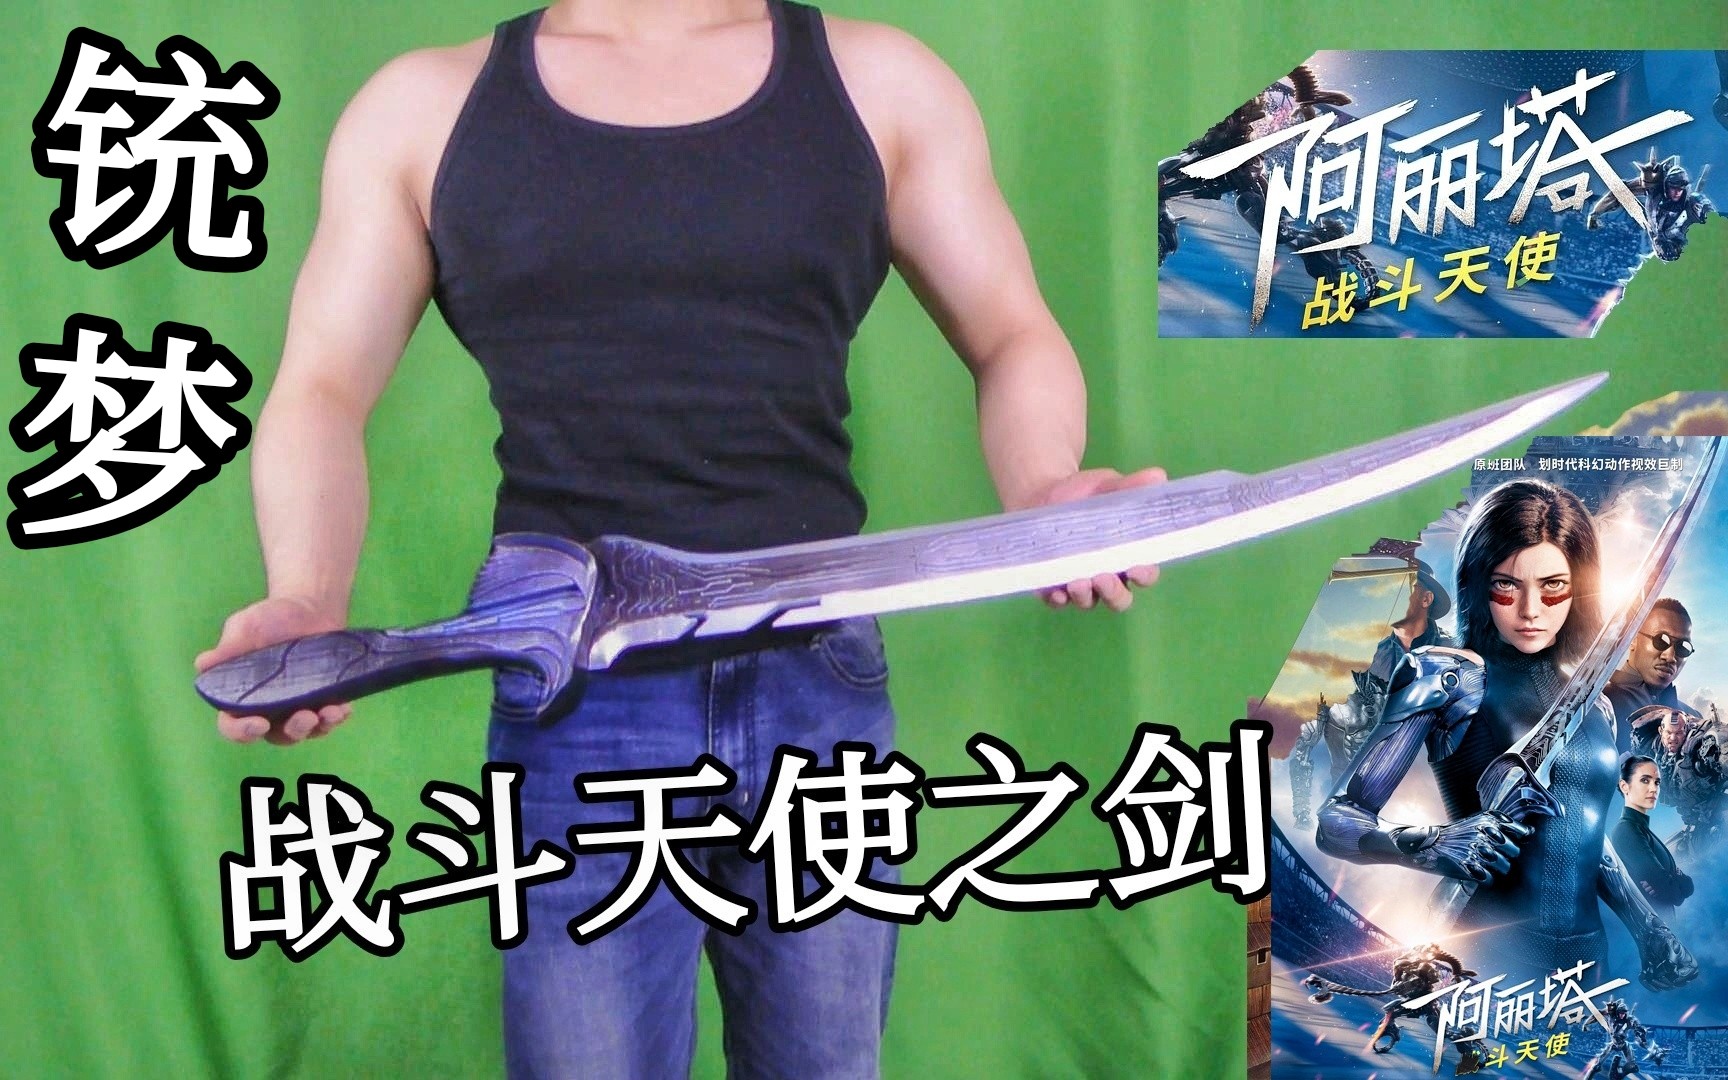 【阿丽塔之剑】技术肥宅up居然3D打印了削铁如泥的阿丽塔战斗天使之剑（也可能是刀）。